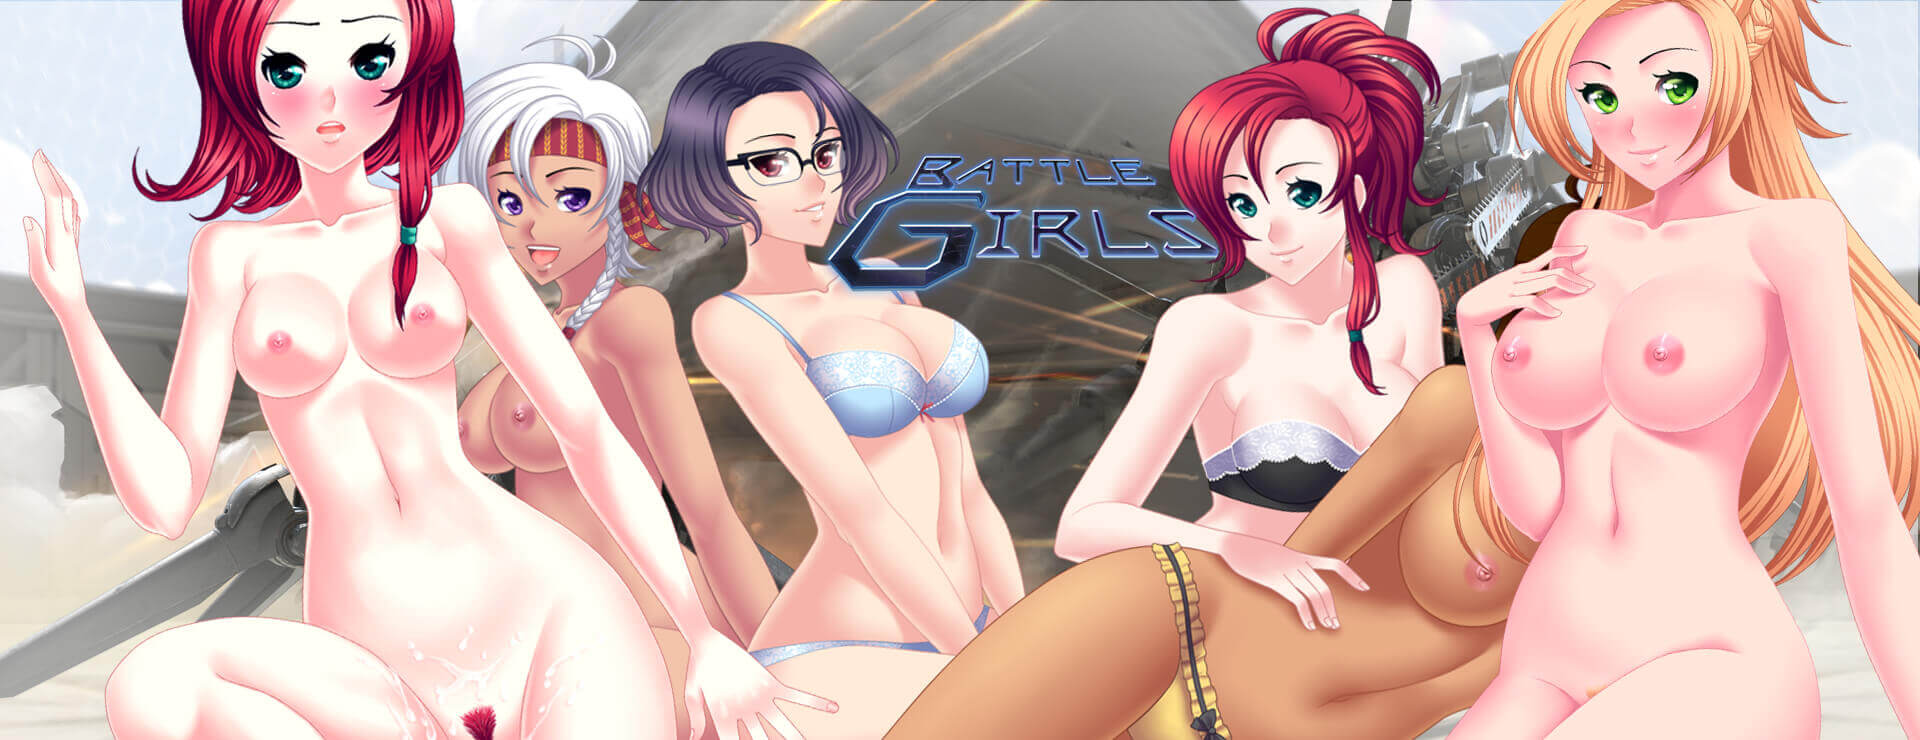 Battle Girls - Japanisches Adventure Spiel